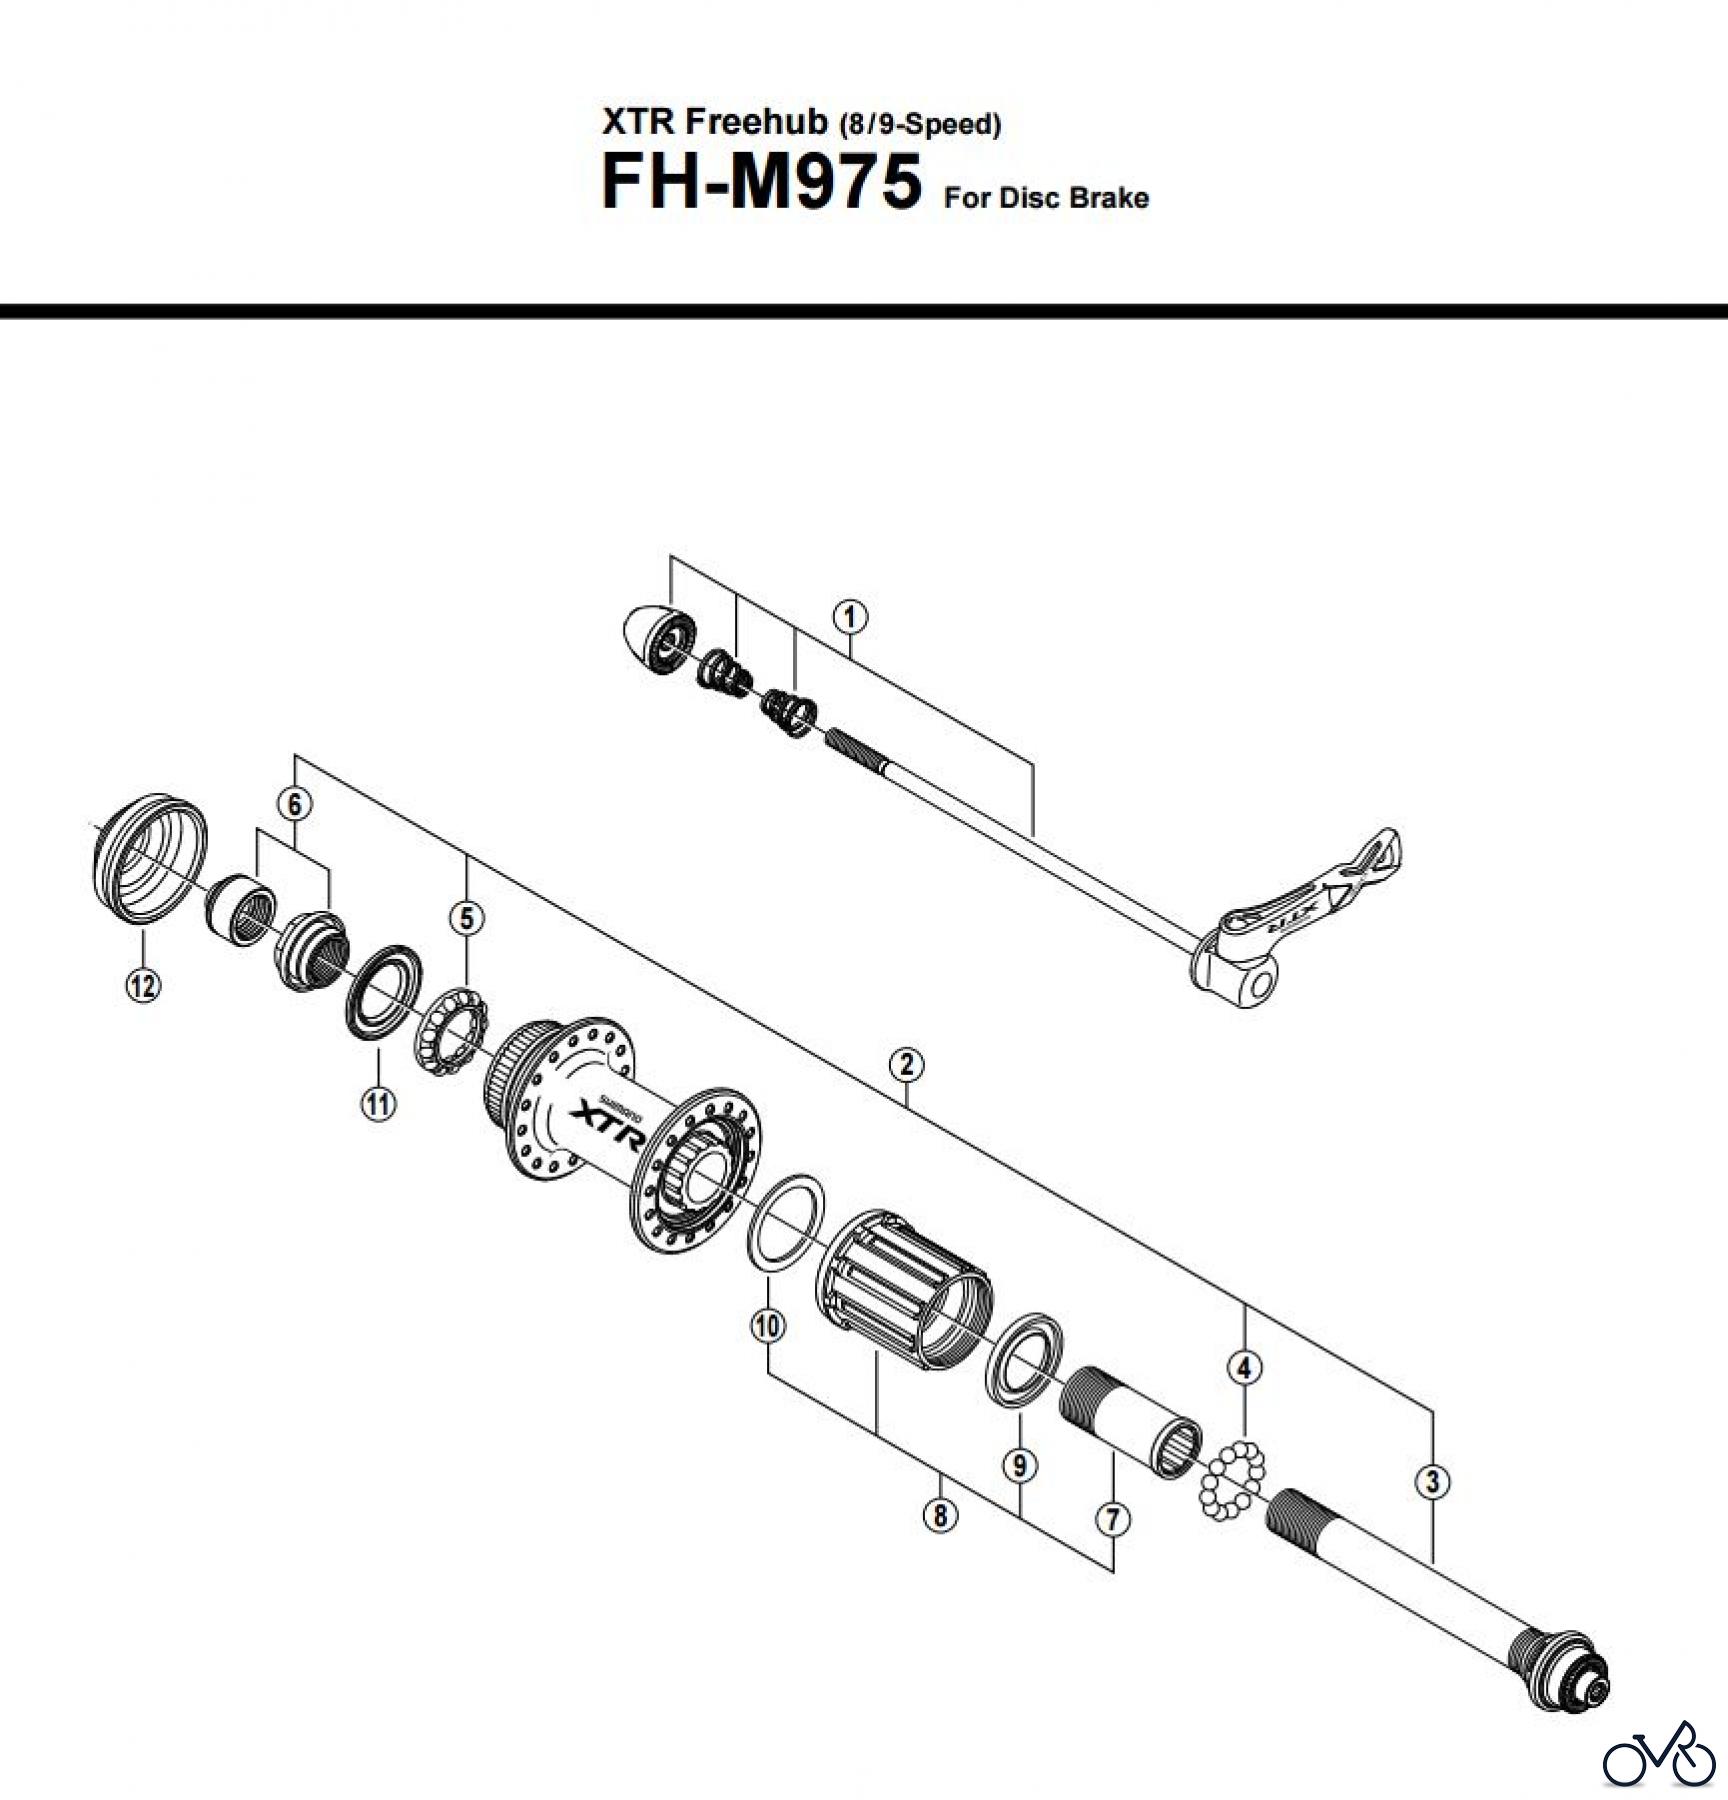  Shimano FH Free Hub - Freilaufnabe FH-M975 -12547 XTR Freehub (8/9-Speed)